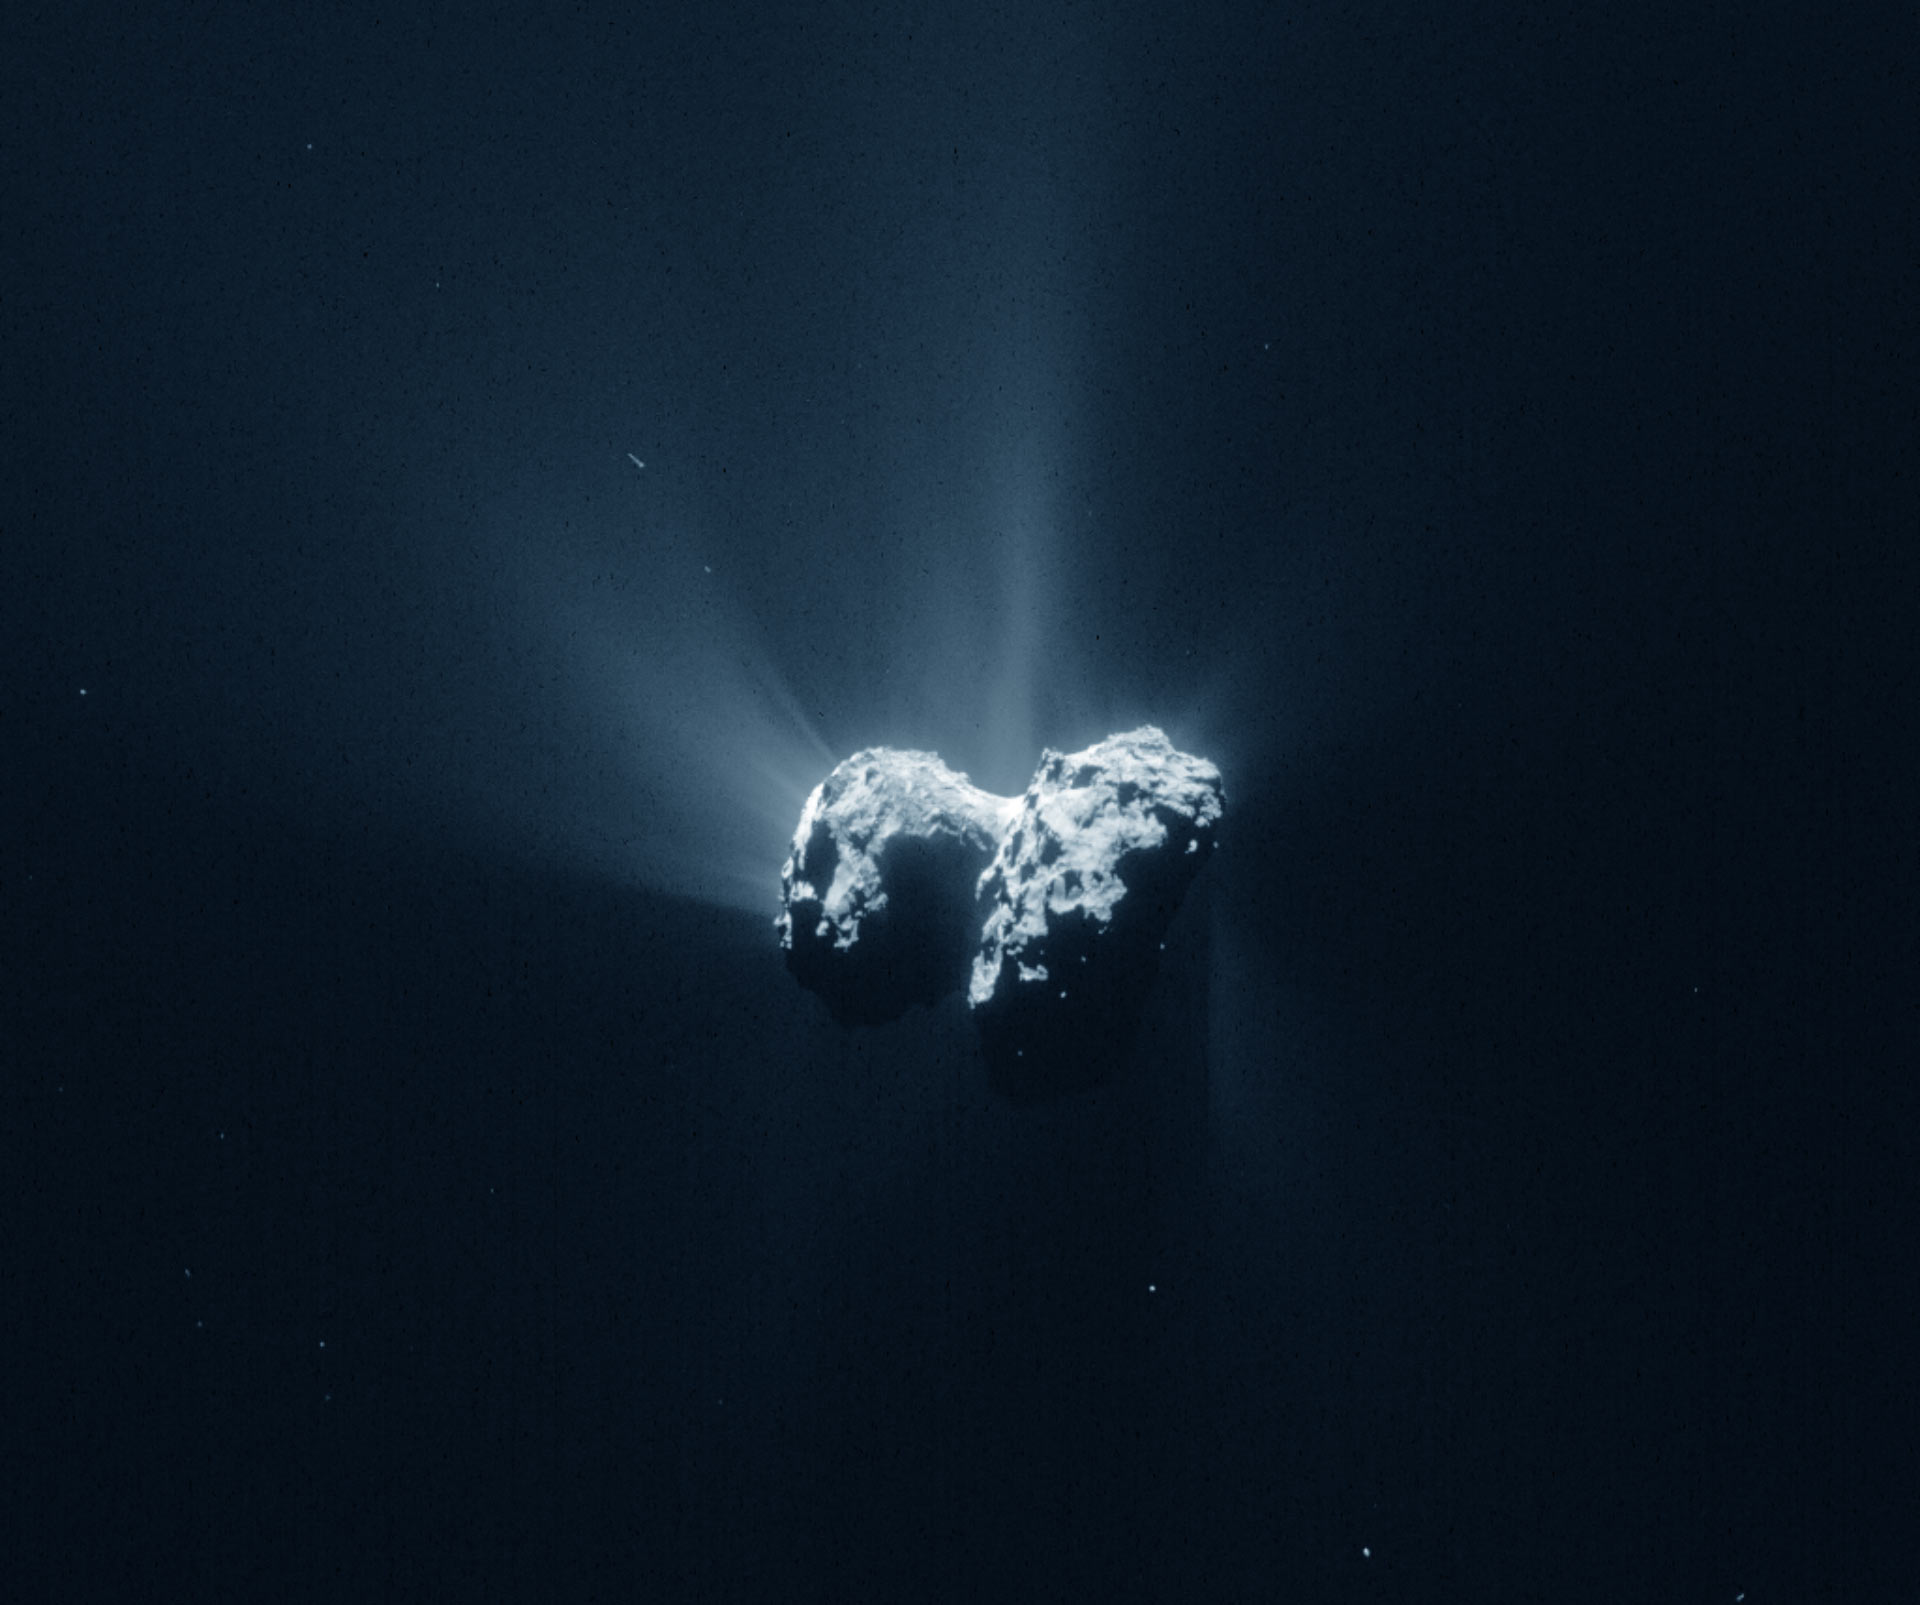 comet 67P from Rosetta